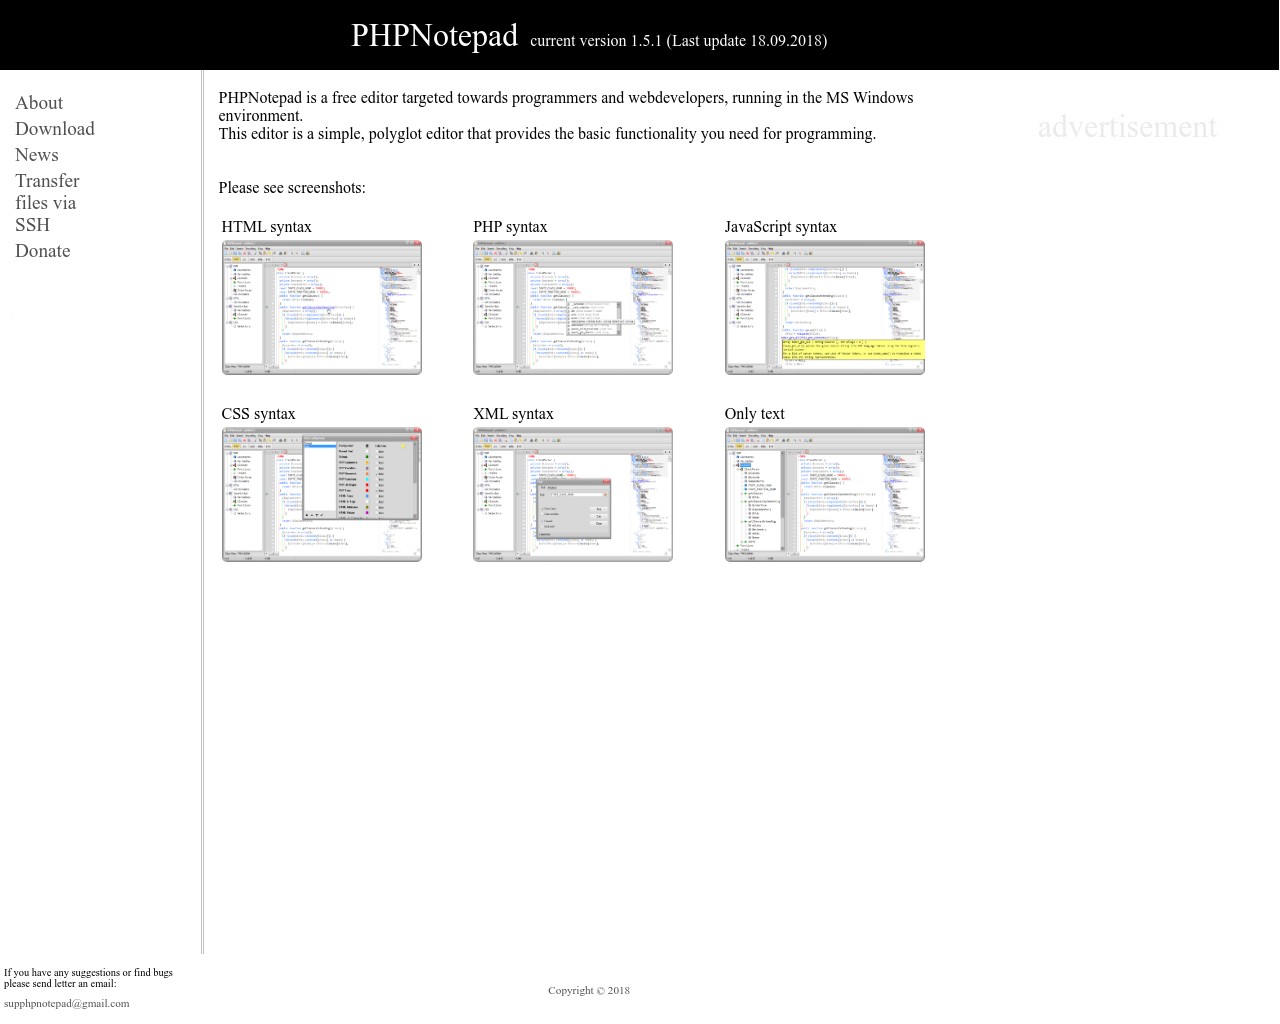 Изображение скриншота сайта - phpnotepad - редактор кода работающий в среде MS Windows.